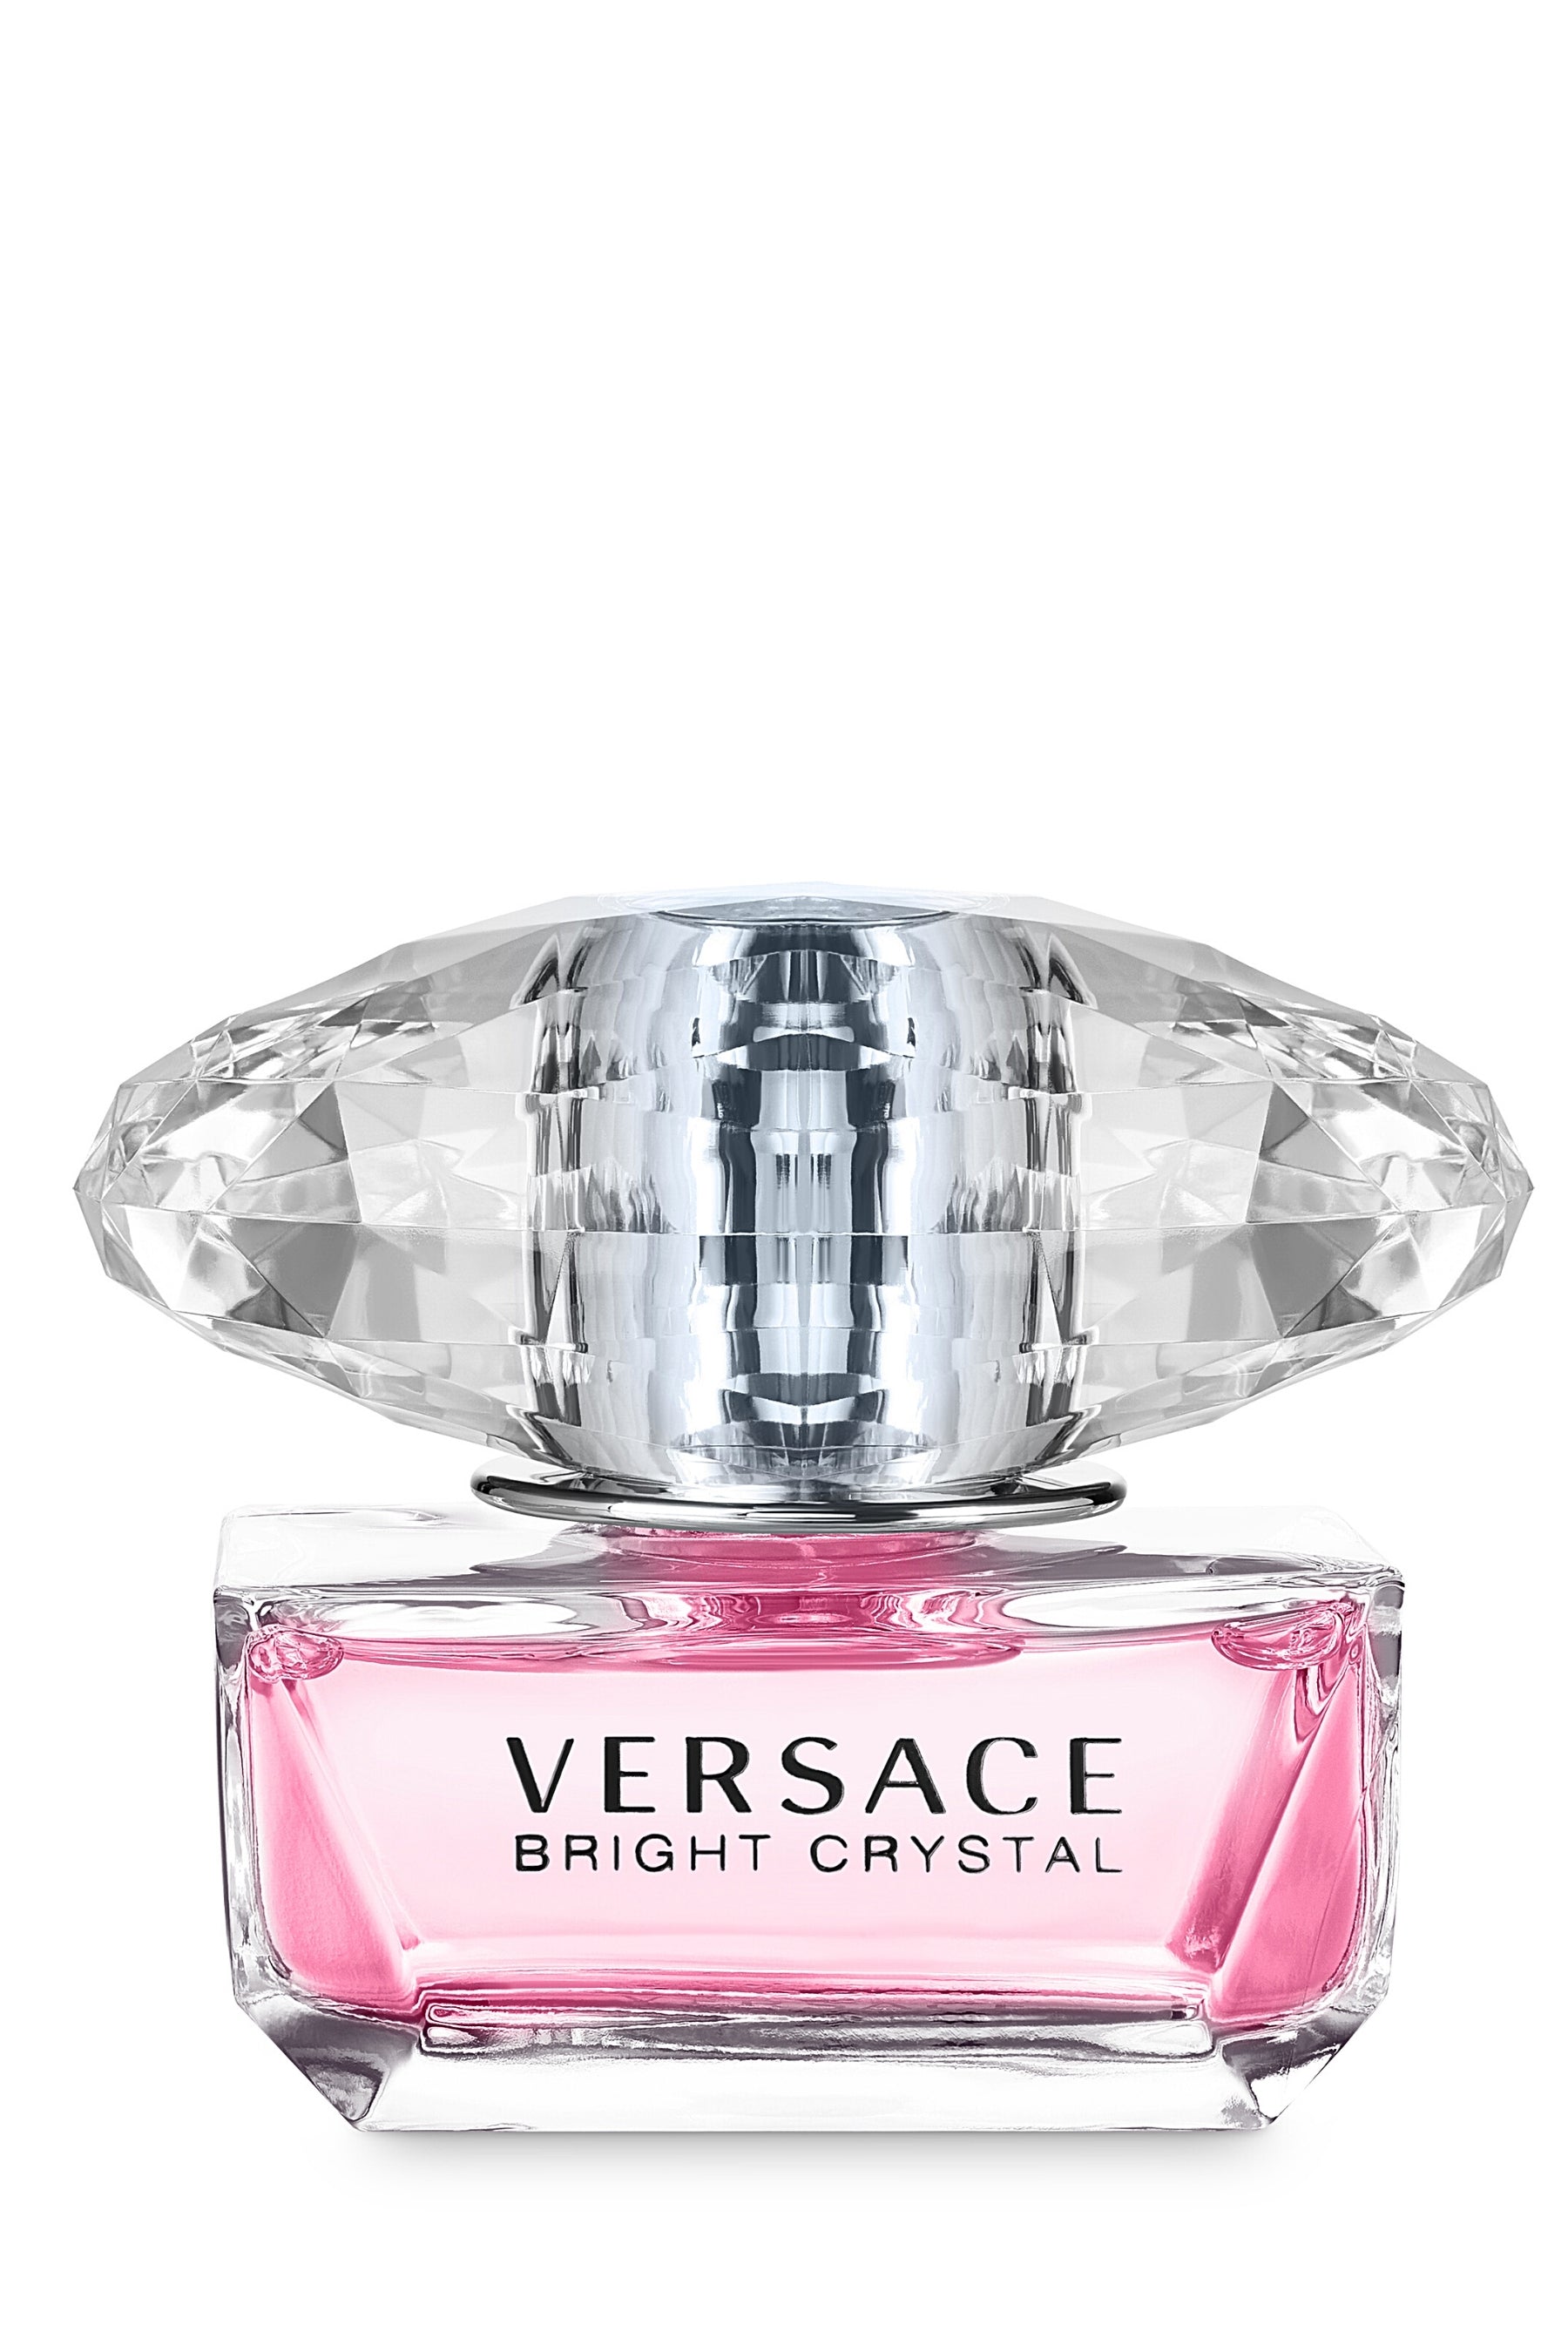 Versace | Bright Crystal Eau de Toilette